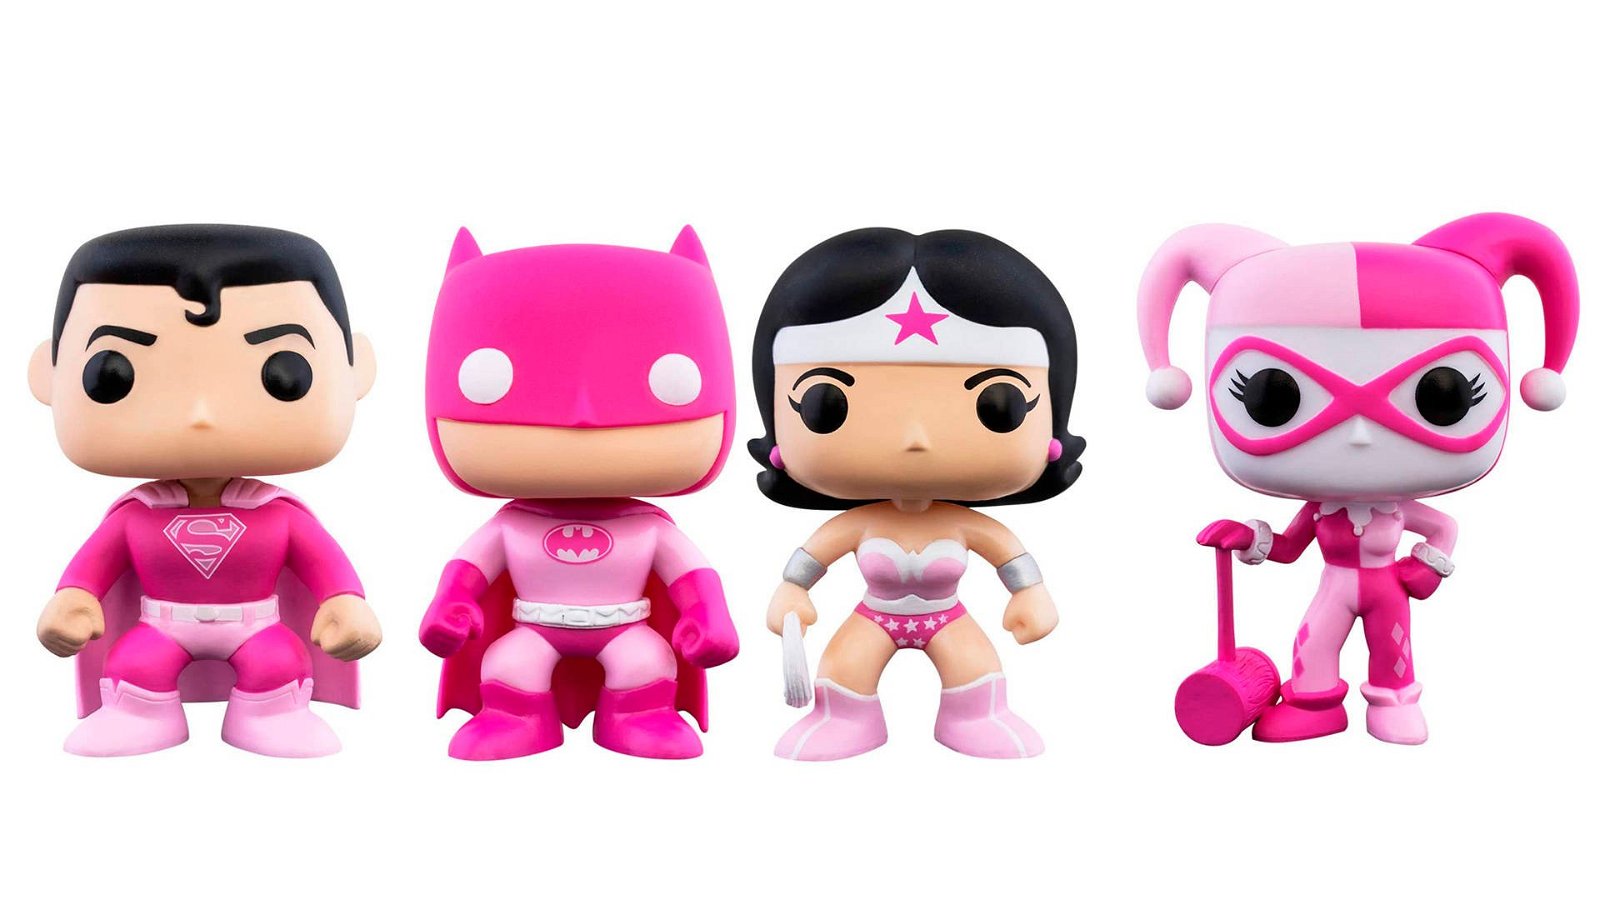 Immagine di Funko POP!: gli eroi DC per la lotta al cancro al seno